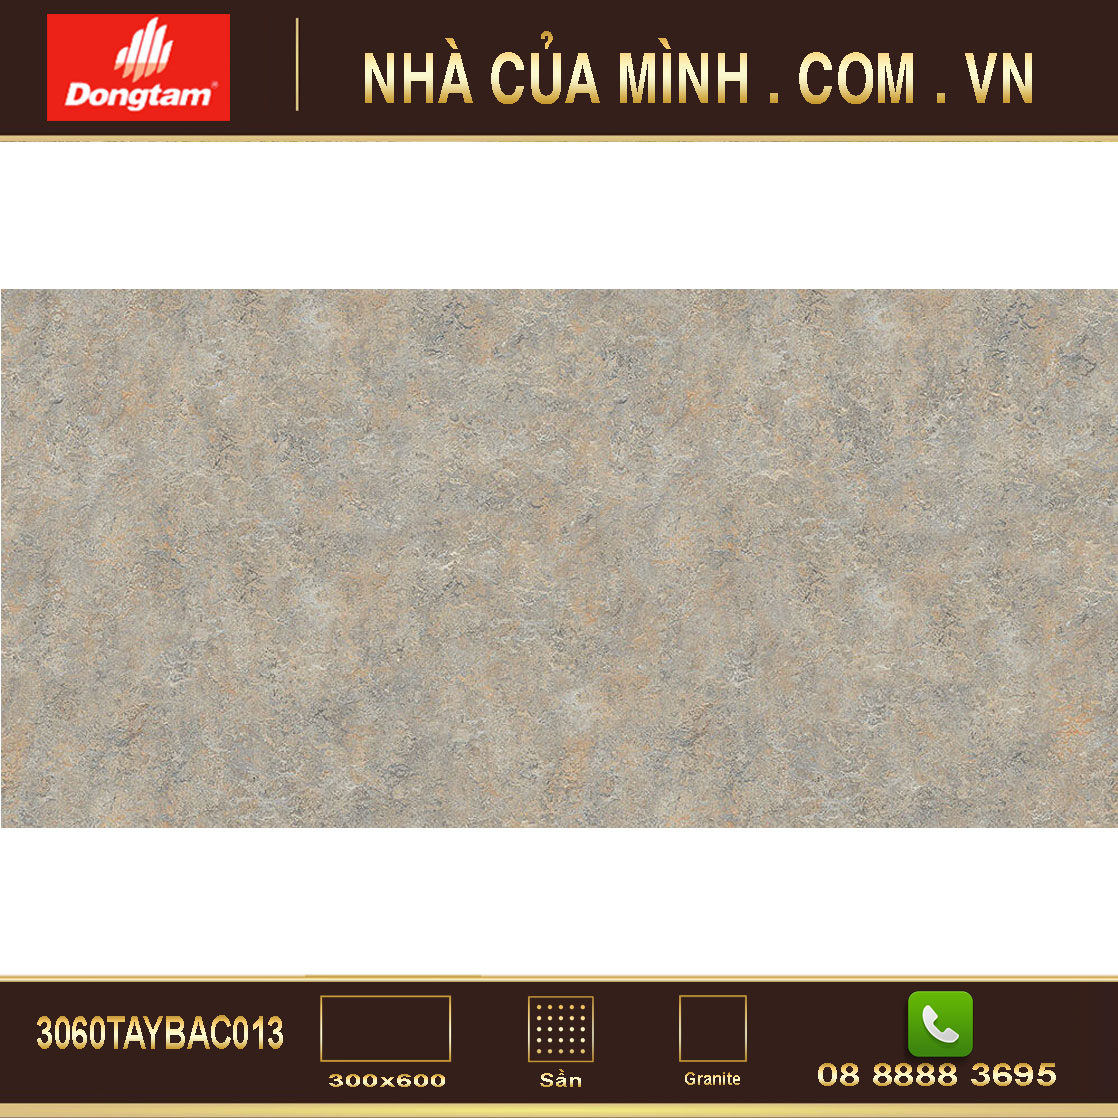 Gạch granite vân đá Đồng Tâm 3060TAYBAC013 cao cấp